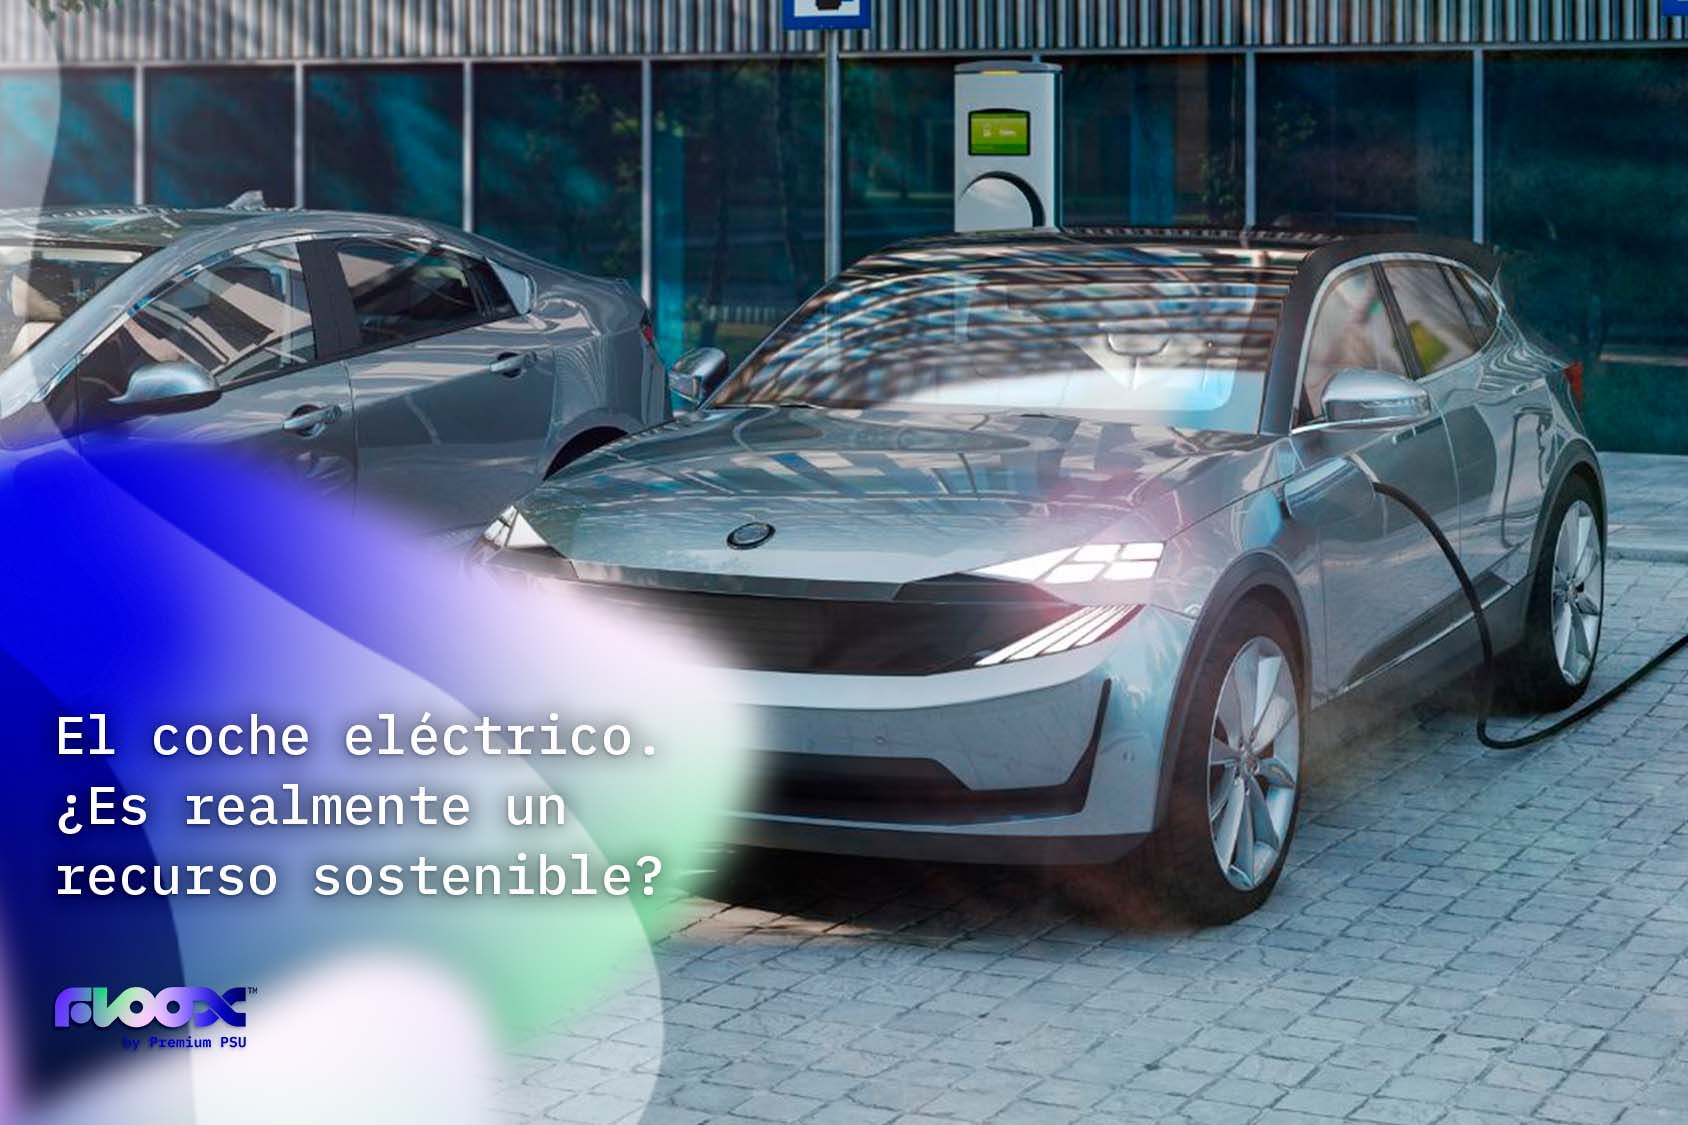 Vehiculo-electrico-sostenible